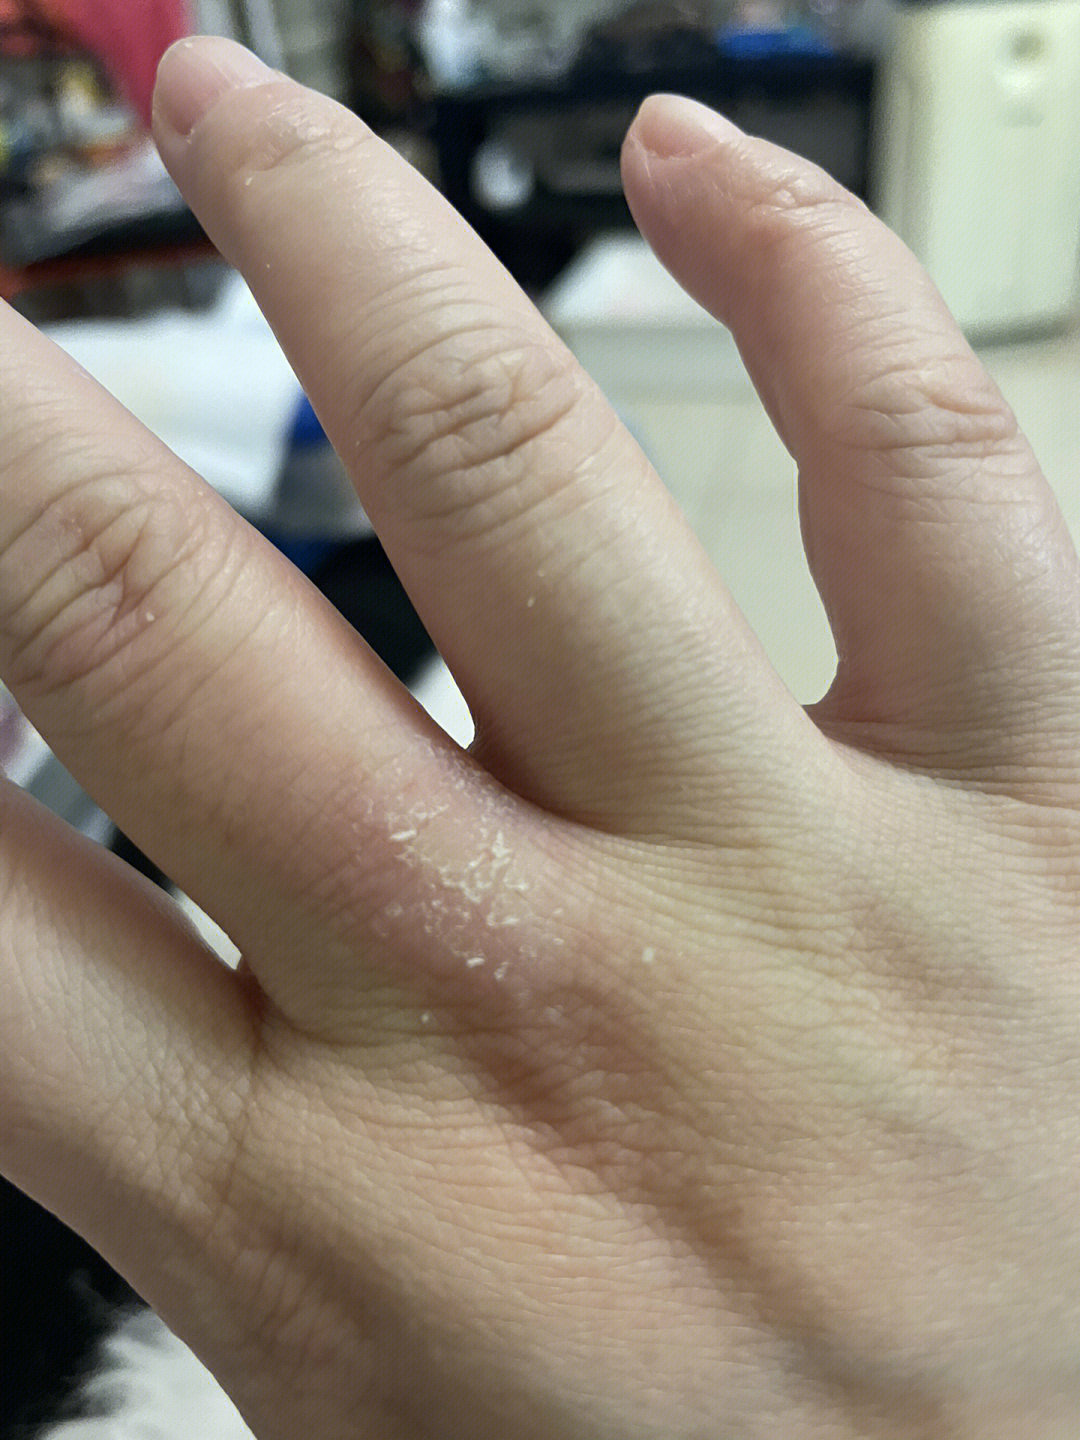 这个手藓问题困扰我近两年,中间好了个把月又反复开裂,只要是手洗了洗